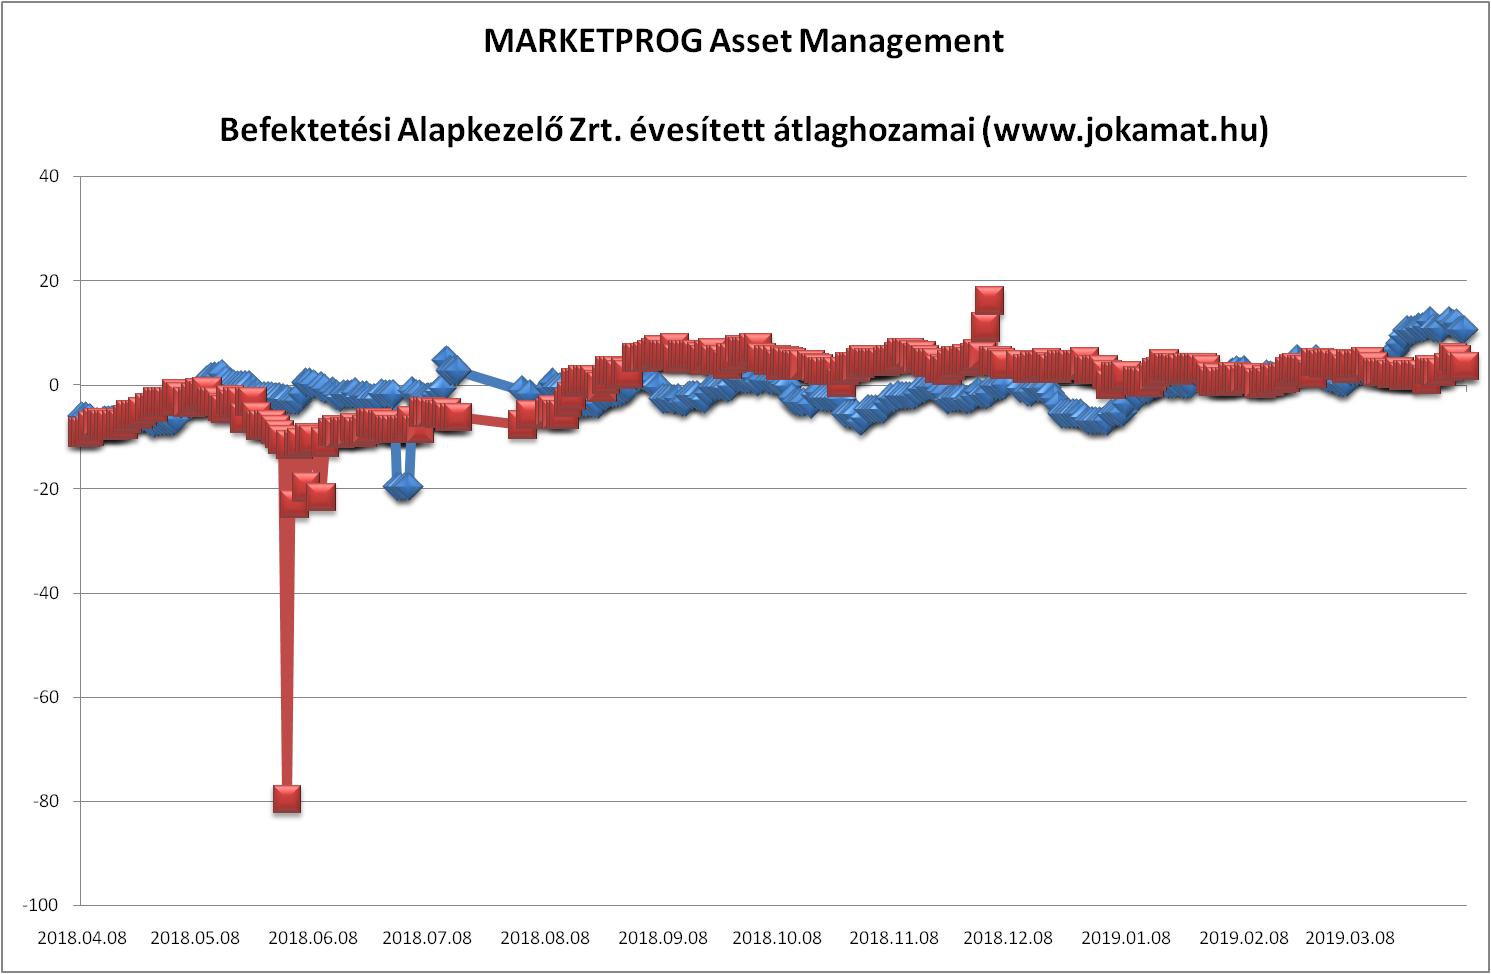 MARKETPROG Asset Management
Befektetési Alapkezelő Zrt.